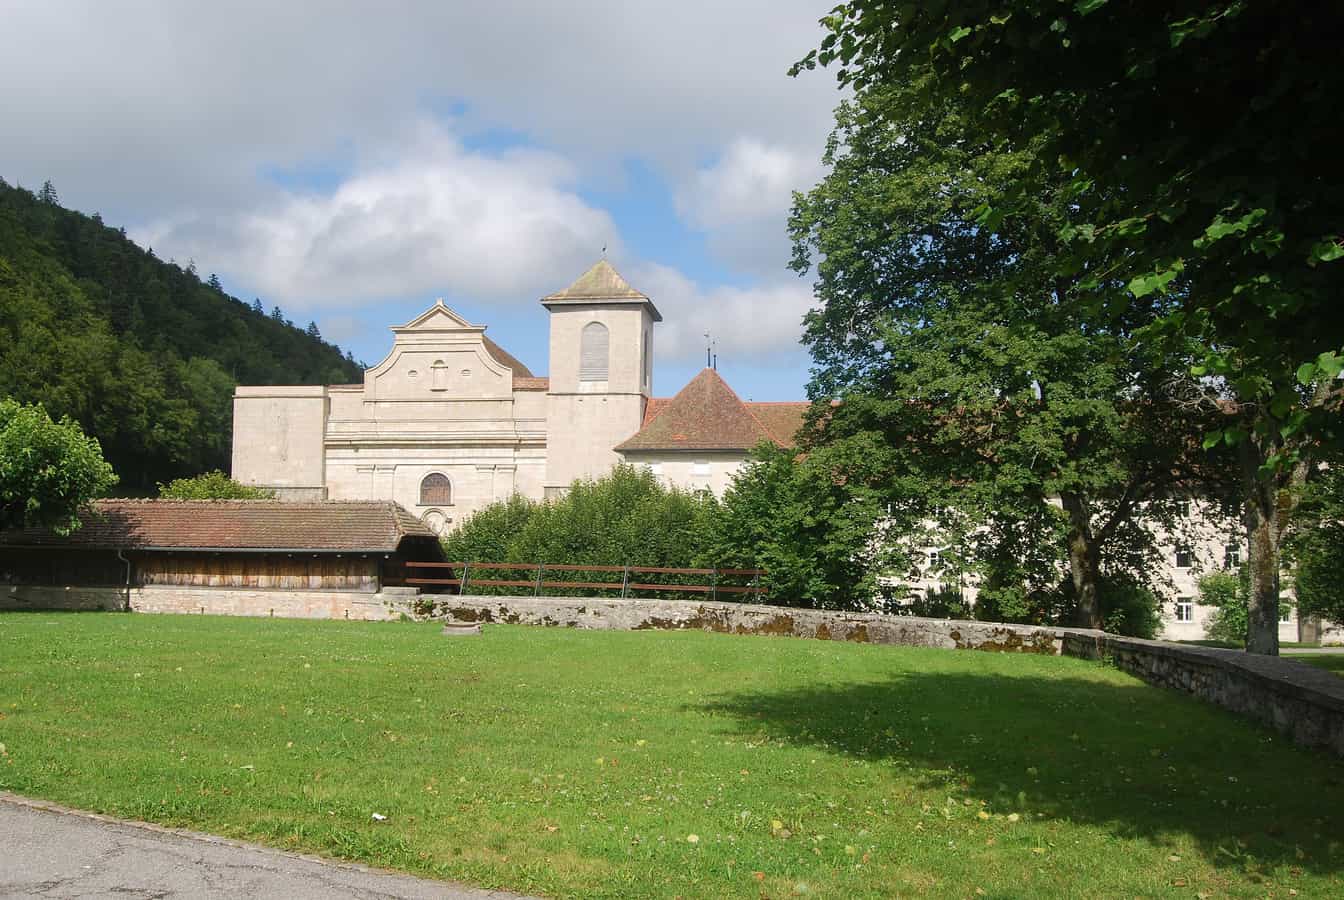 Abtei Bellelay, Gemeinde Saicourt, Kanton Bern, Schweiz